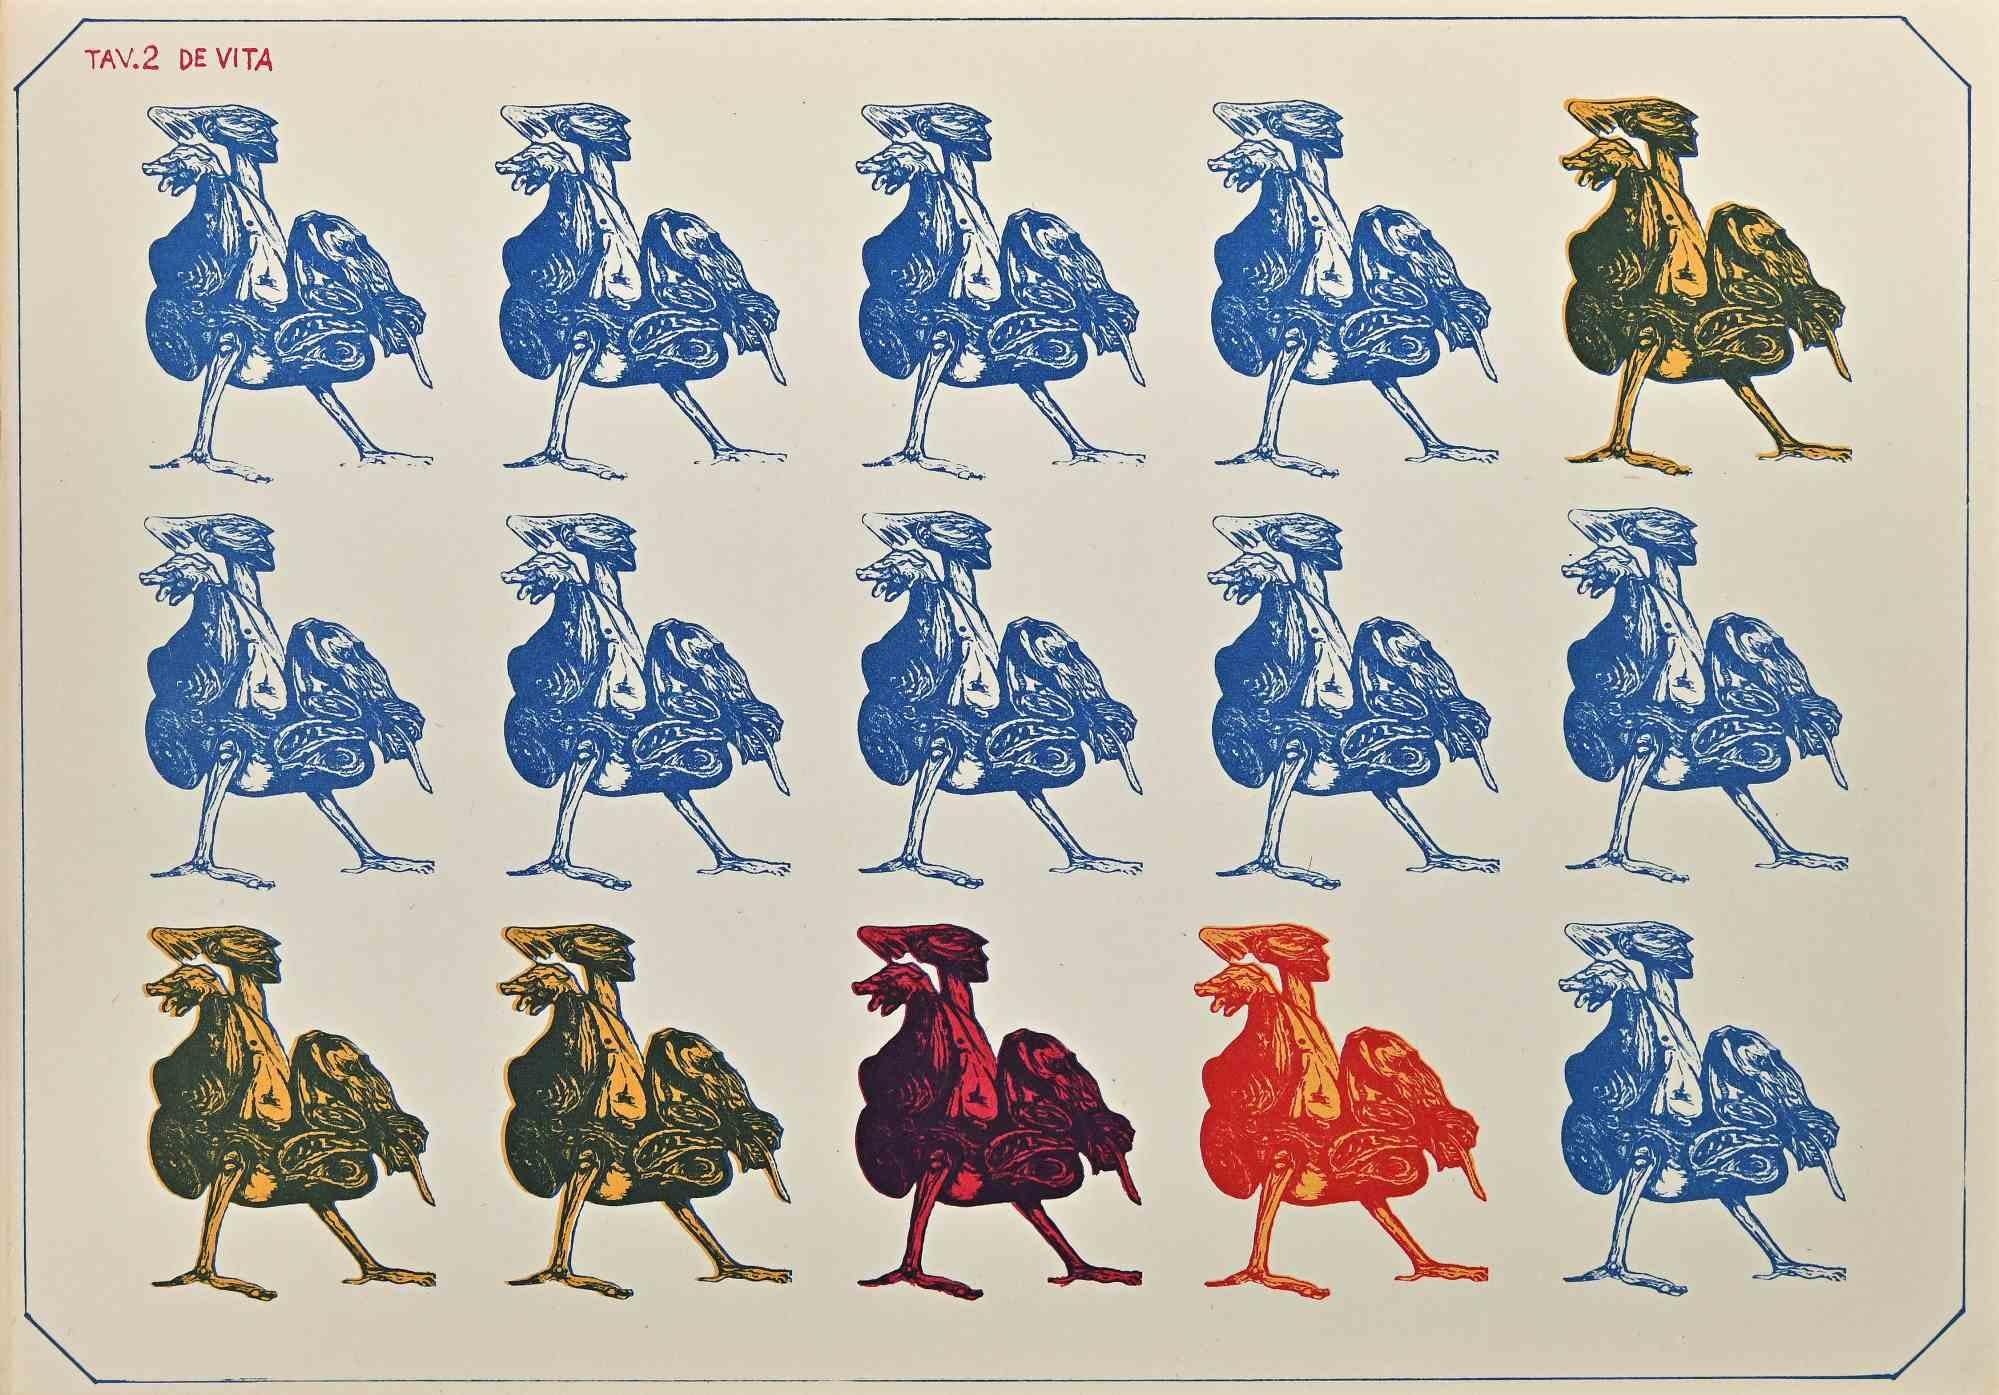 Luciano de Vita Figurative Print - Rooster-soldiers - Lithograph realized by Luciano De Vita - 1950s